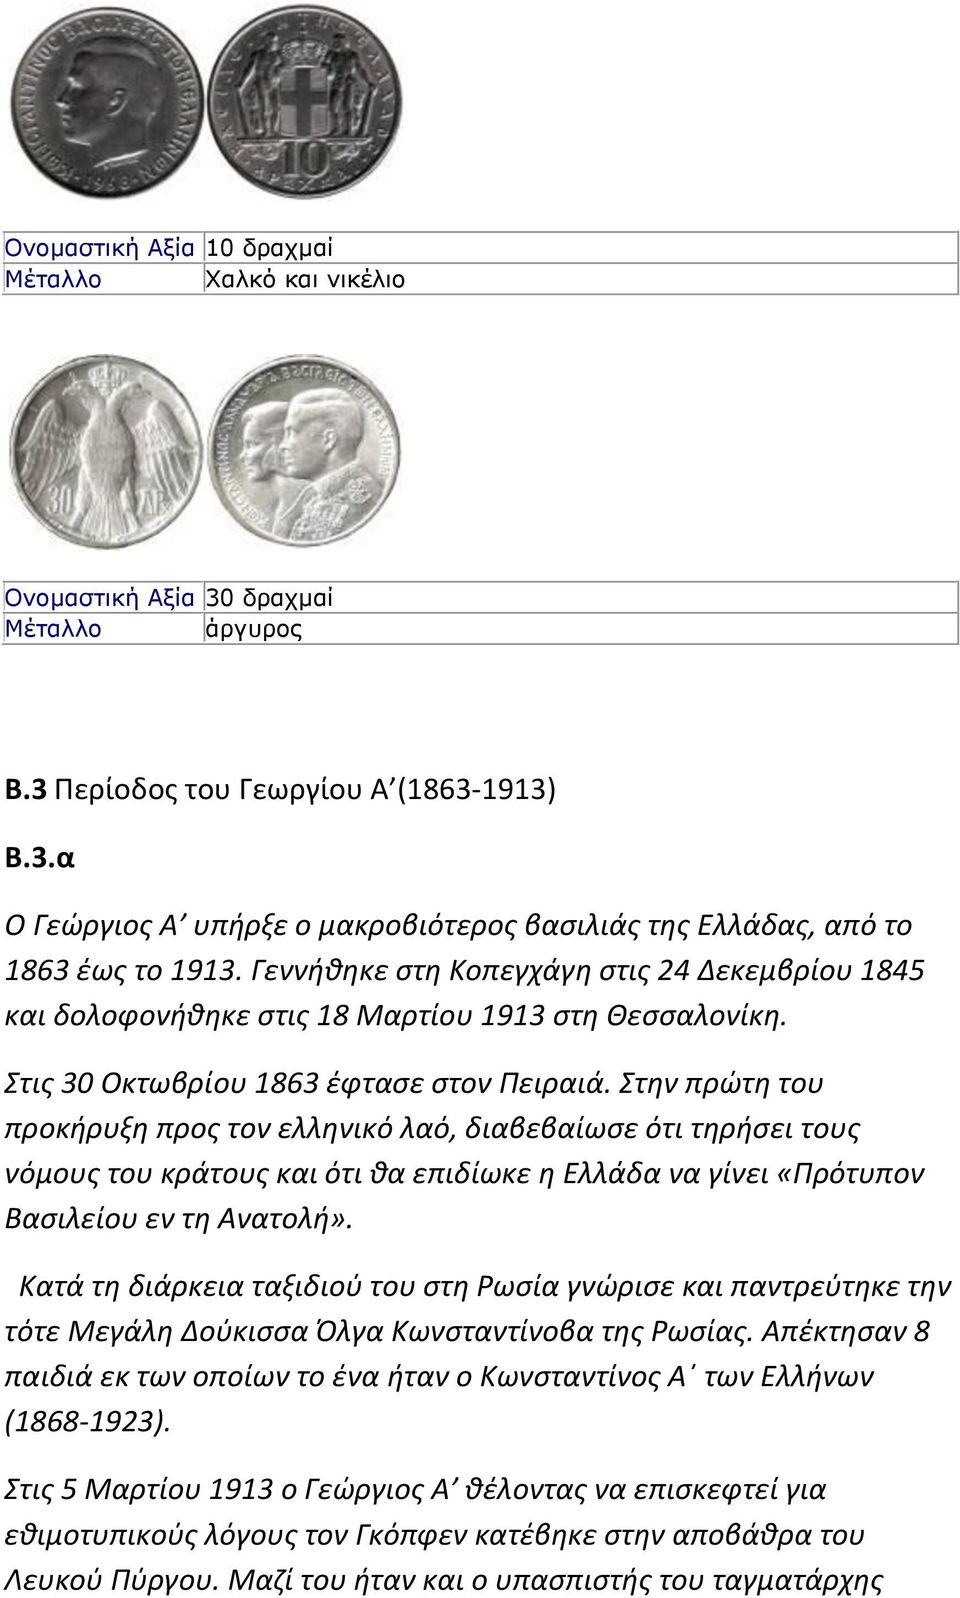 Στην πρώτη του προκήρυξη προς τον ελληνικό λαό, διαβεβαίωσε ότι τηρήσει τους νόμους του κράτους και ότι θα επιδίωκε η Ελλάδα να γίνει «Πρότυπον Βασιλείου εν τη Ανατολή».